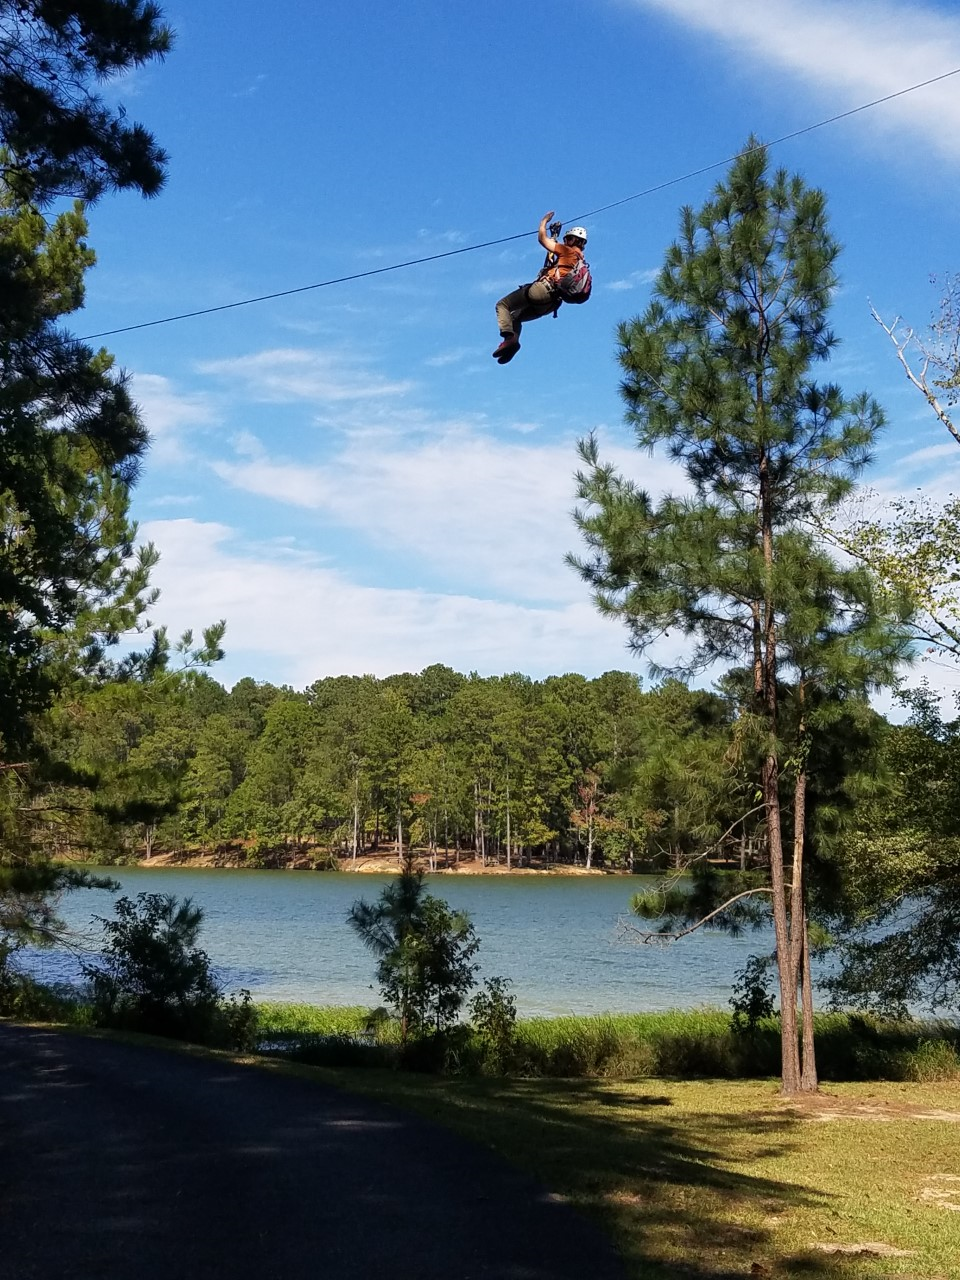 Zipline and Aerial Adventures at Wind Creek State Park